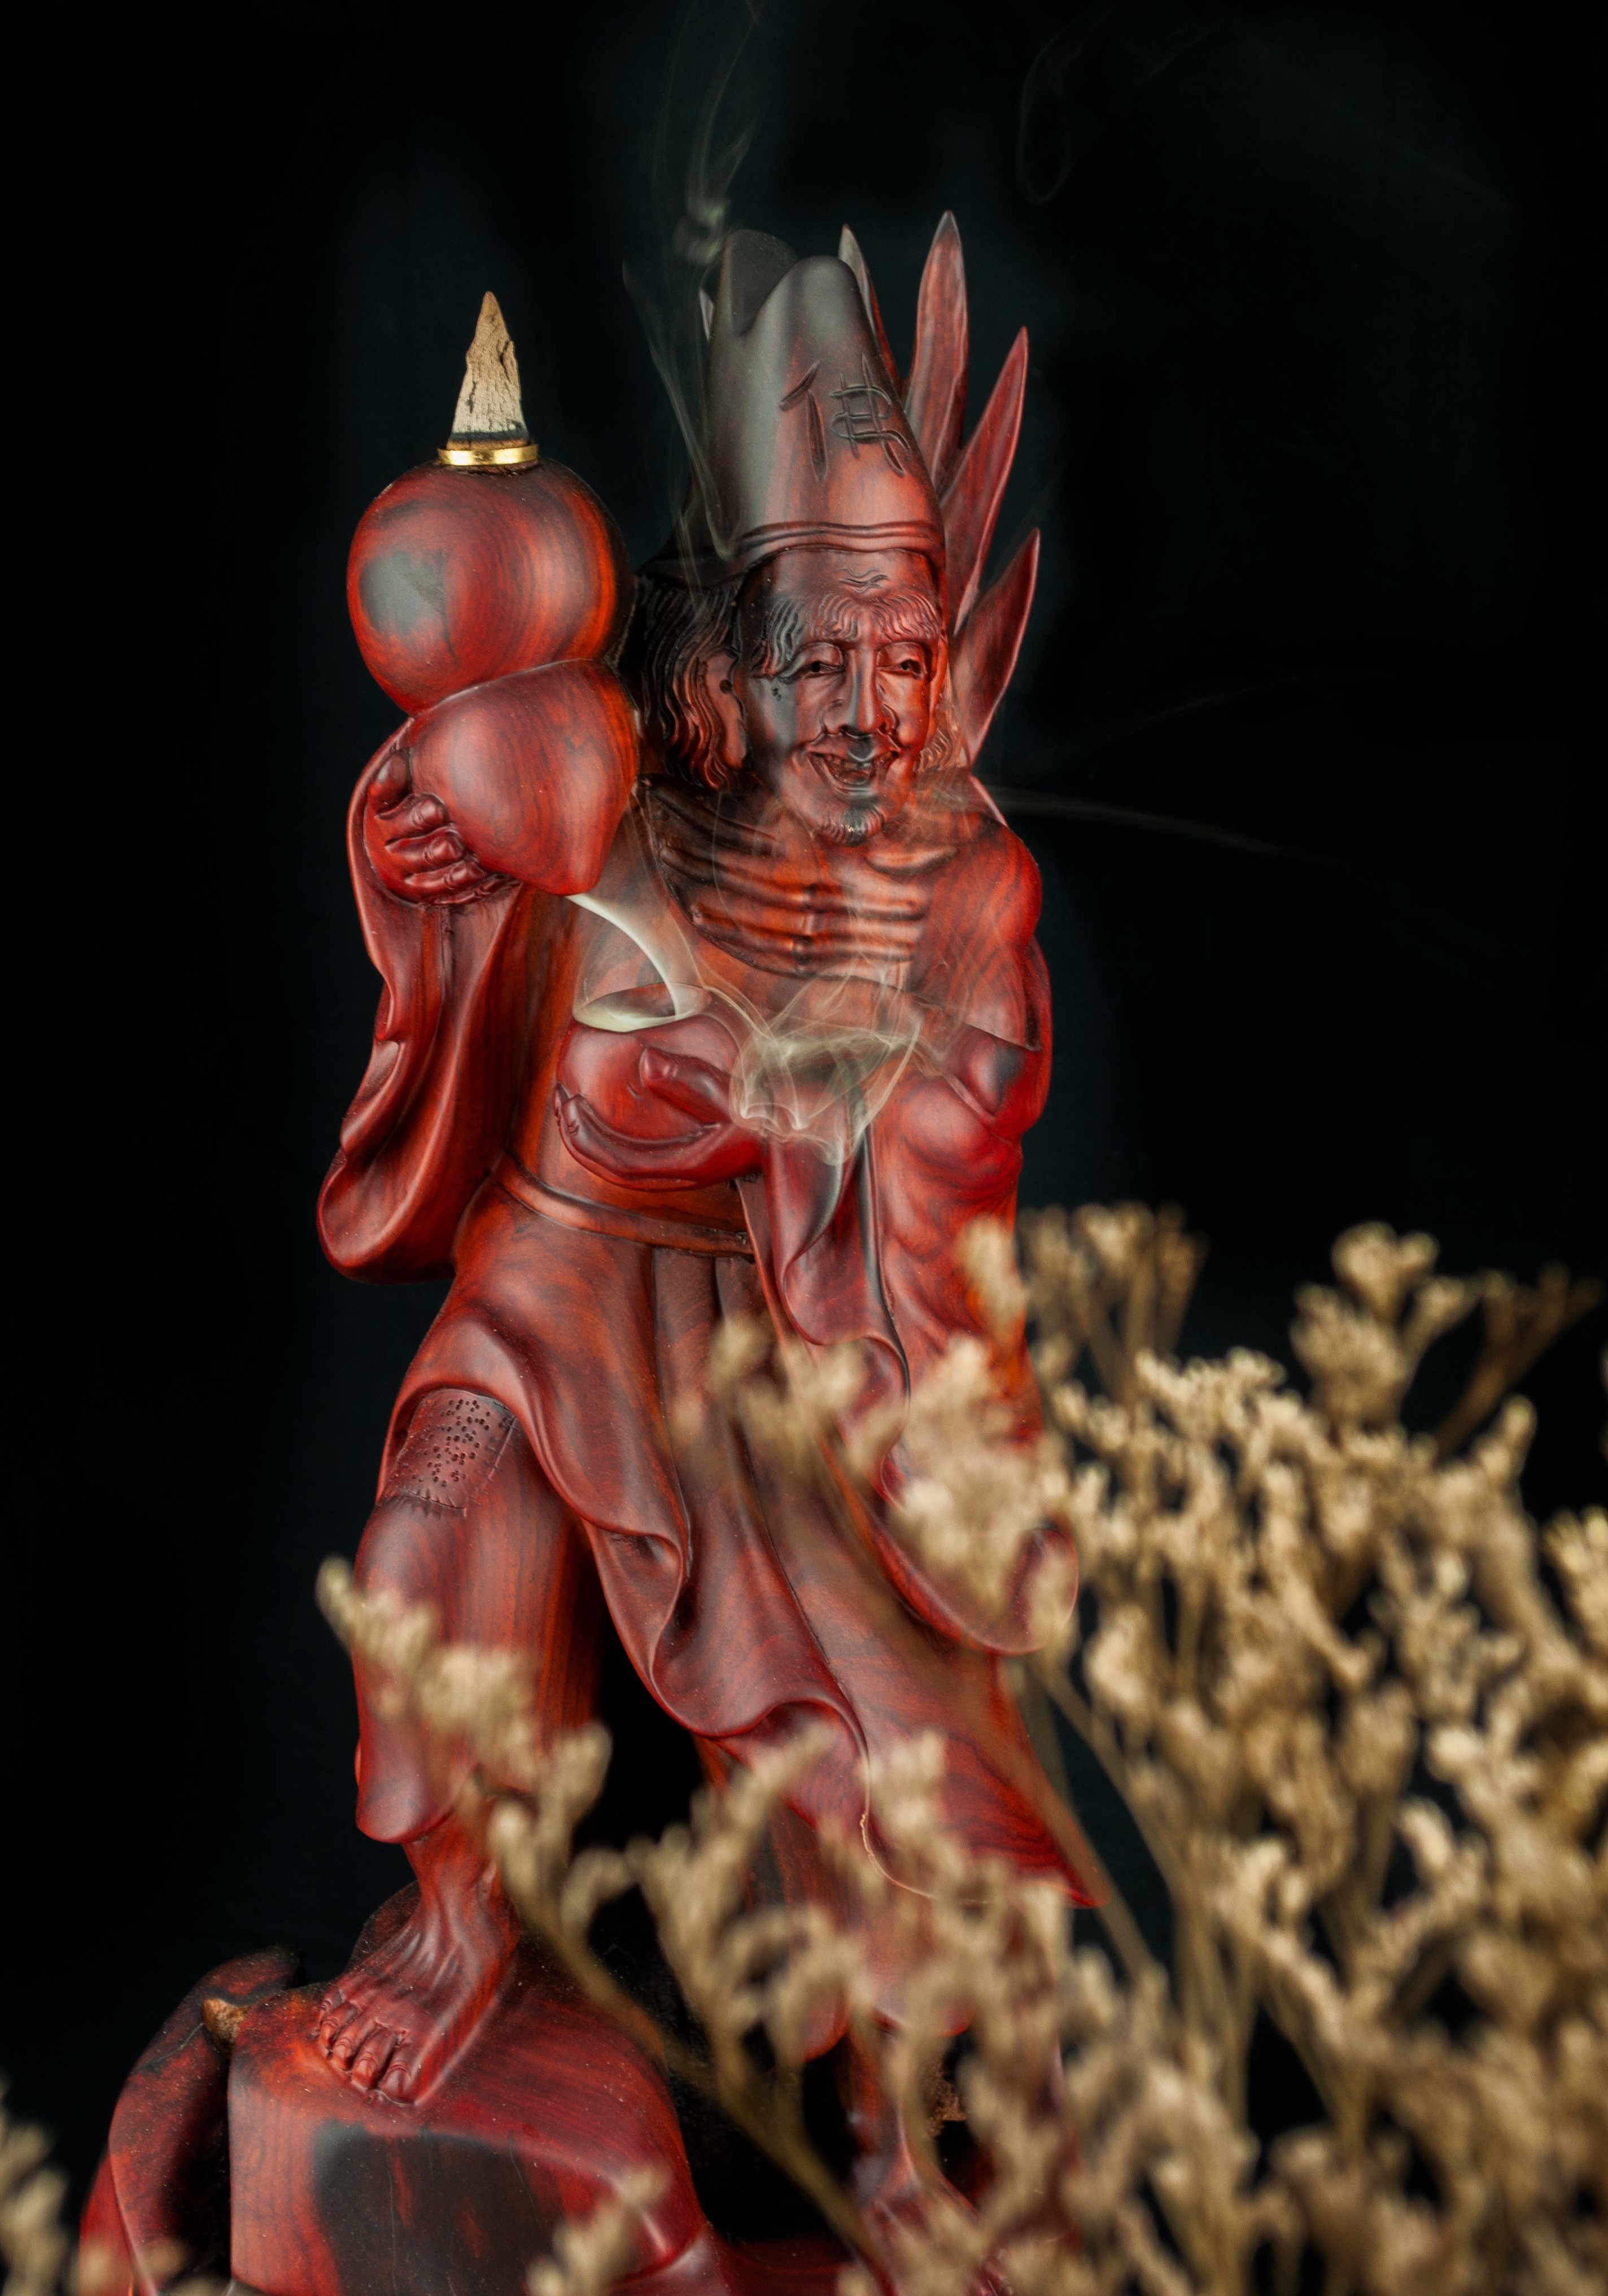 Tượng gỗ mỹ nghệ- Tế Công đại tiếu- gỗ trắc đỏ đen, xông trầm